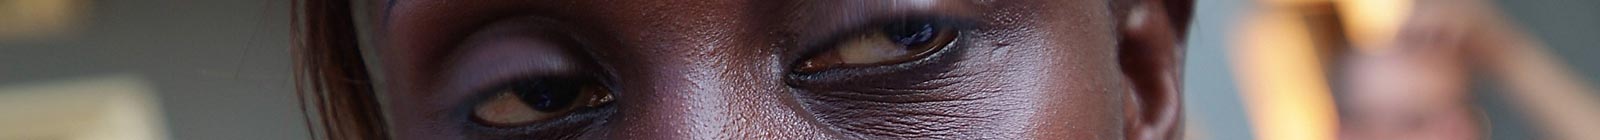 Eyes of Fantakounda, Conakry, Guinea.